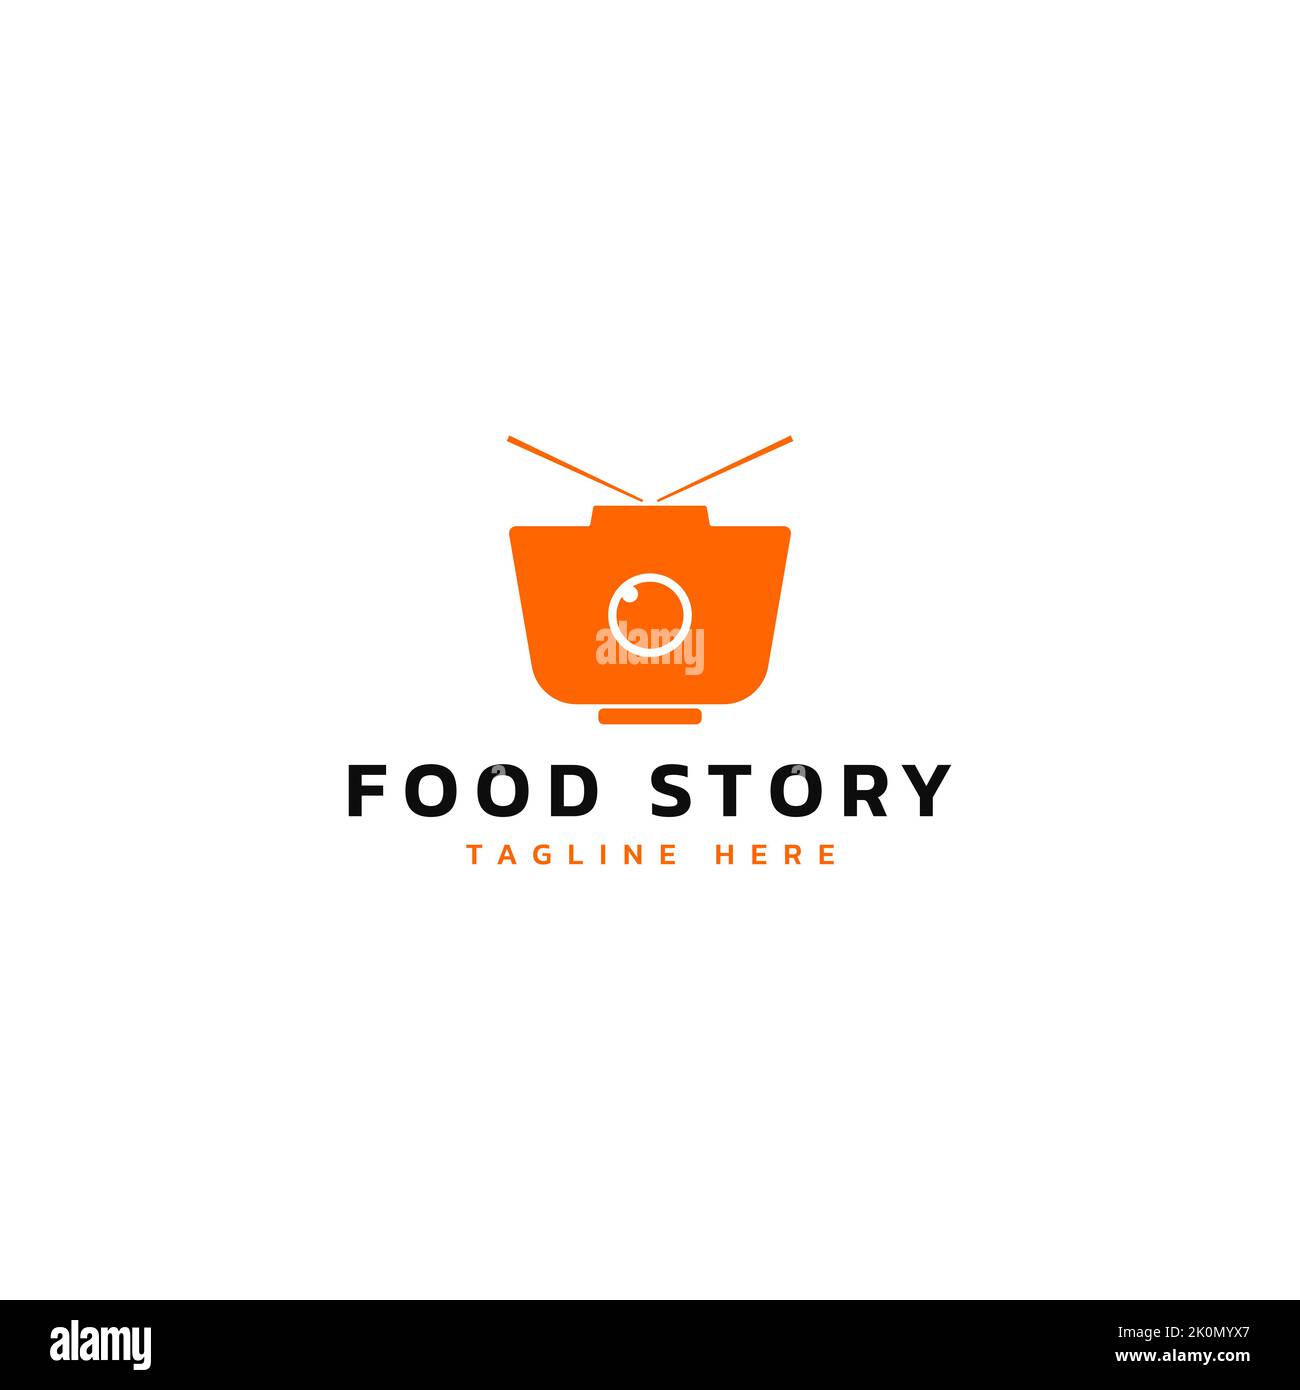 Design semplice con ciotola e logo della fotocamera. Logo di fotografia alimentare. Logo della storia del cibo. Formato vettoriale. Illustrazione Vettoriale